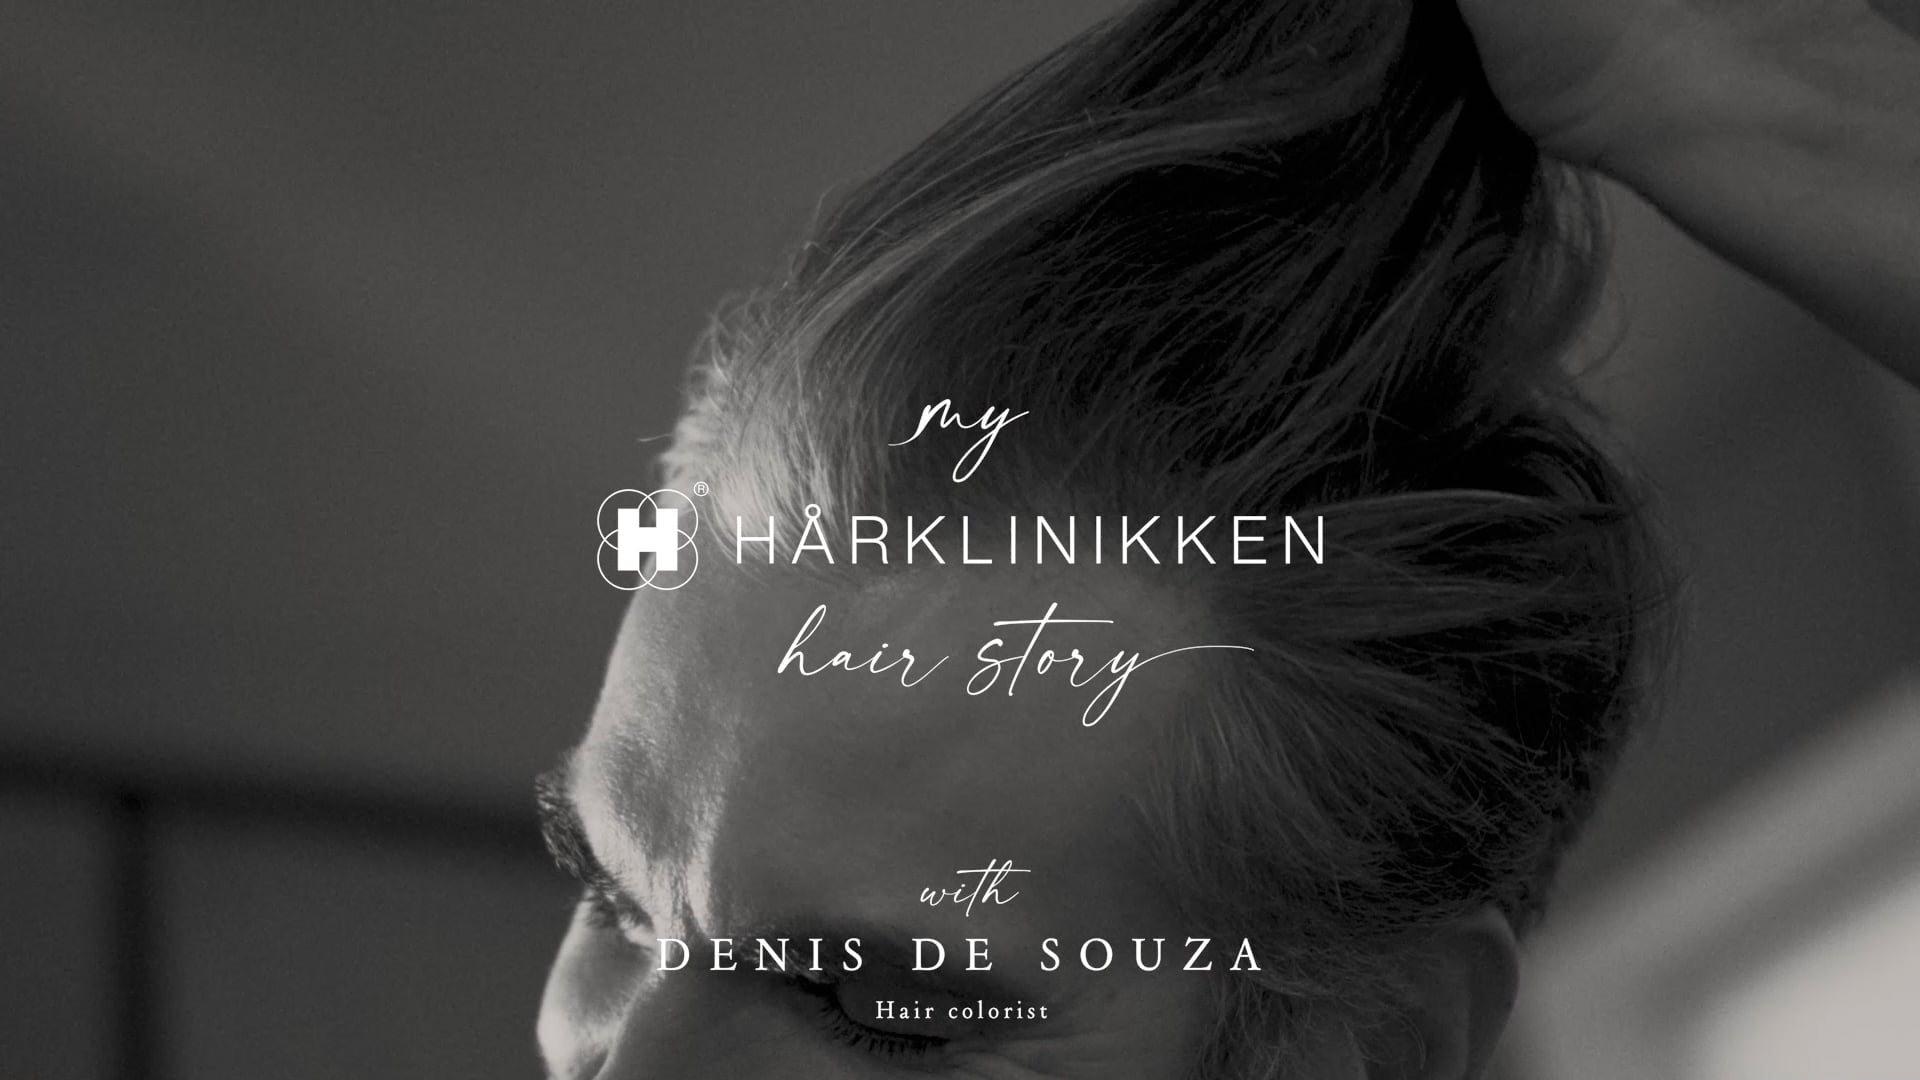 My Harklinkken Hair Story with Denis De Souza Poster